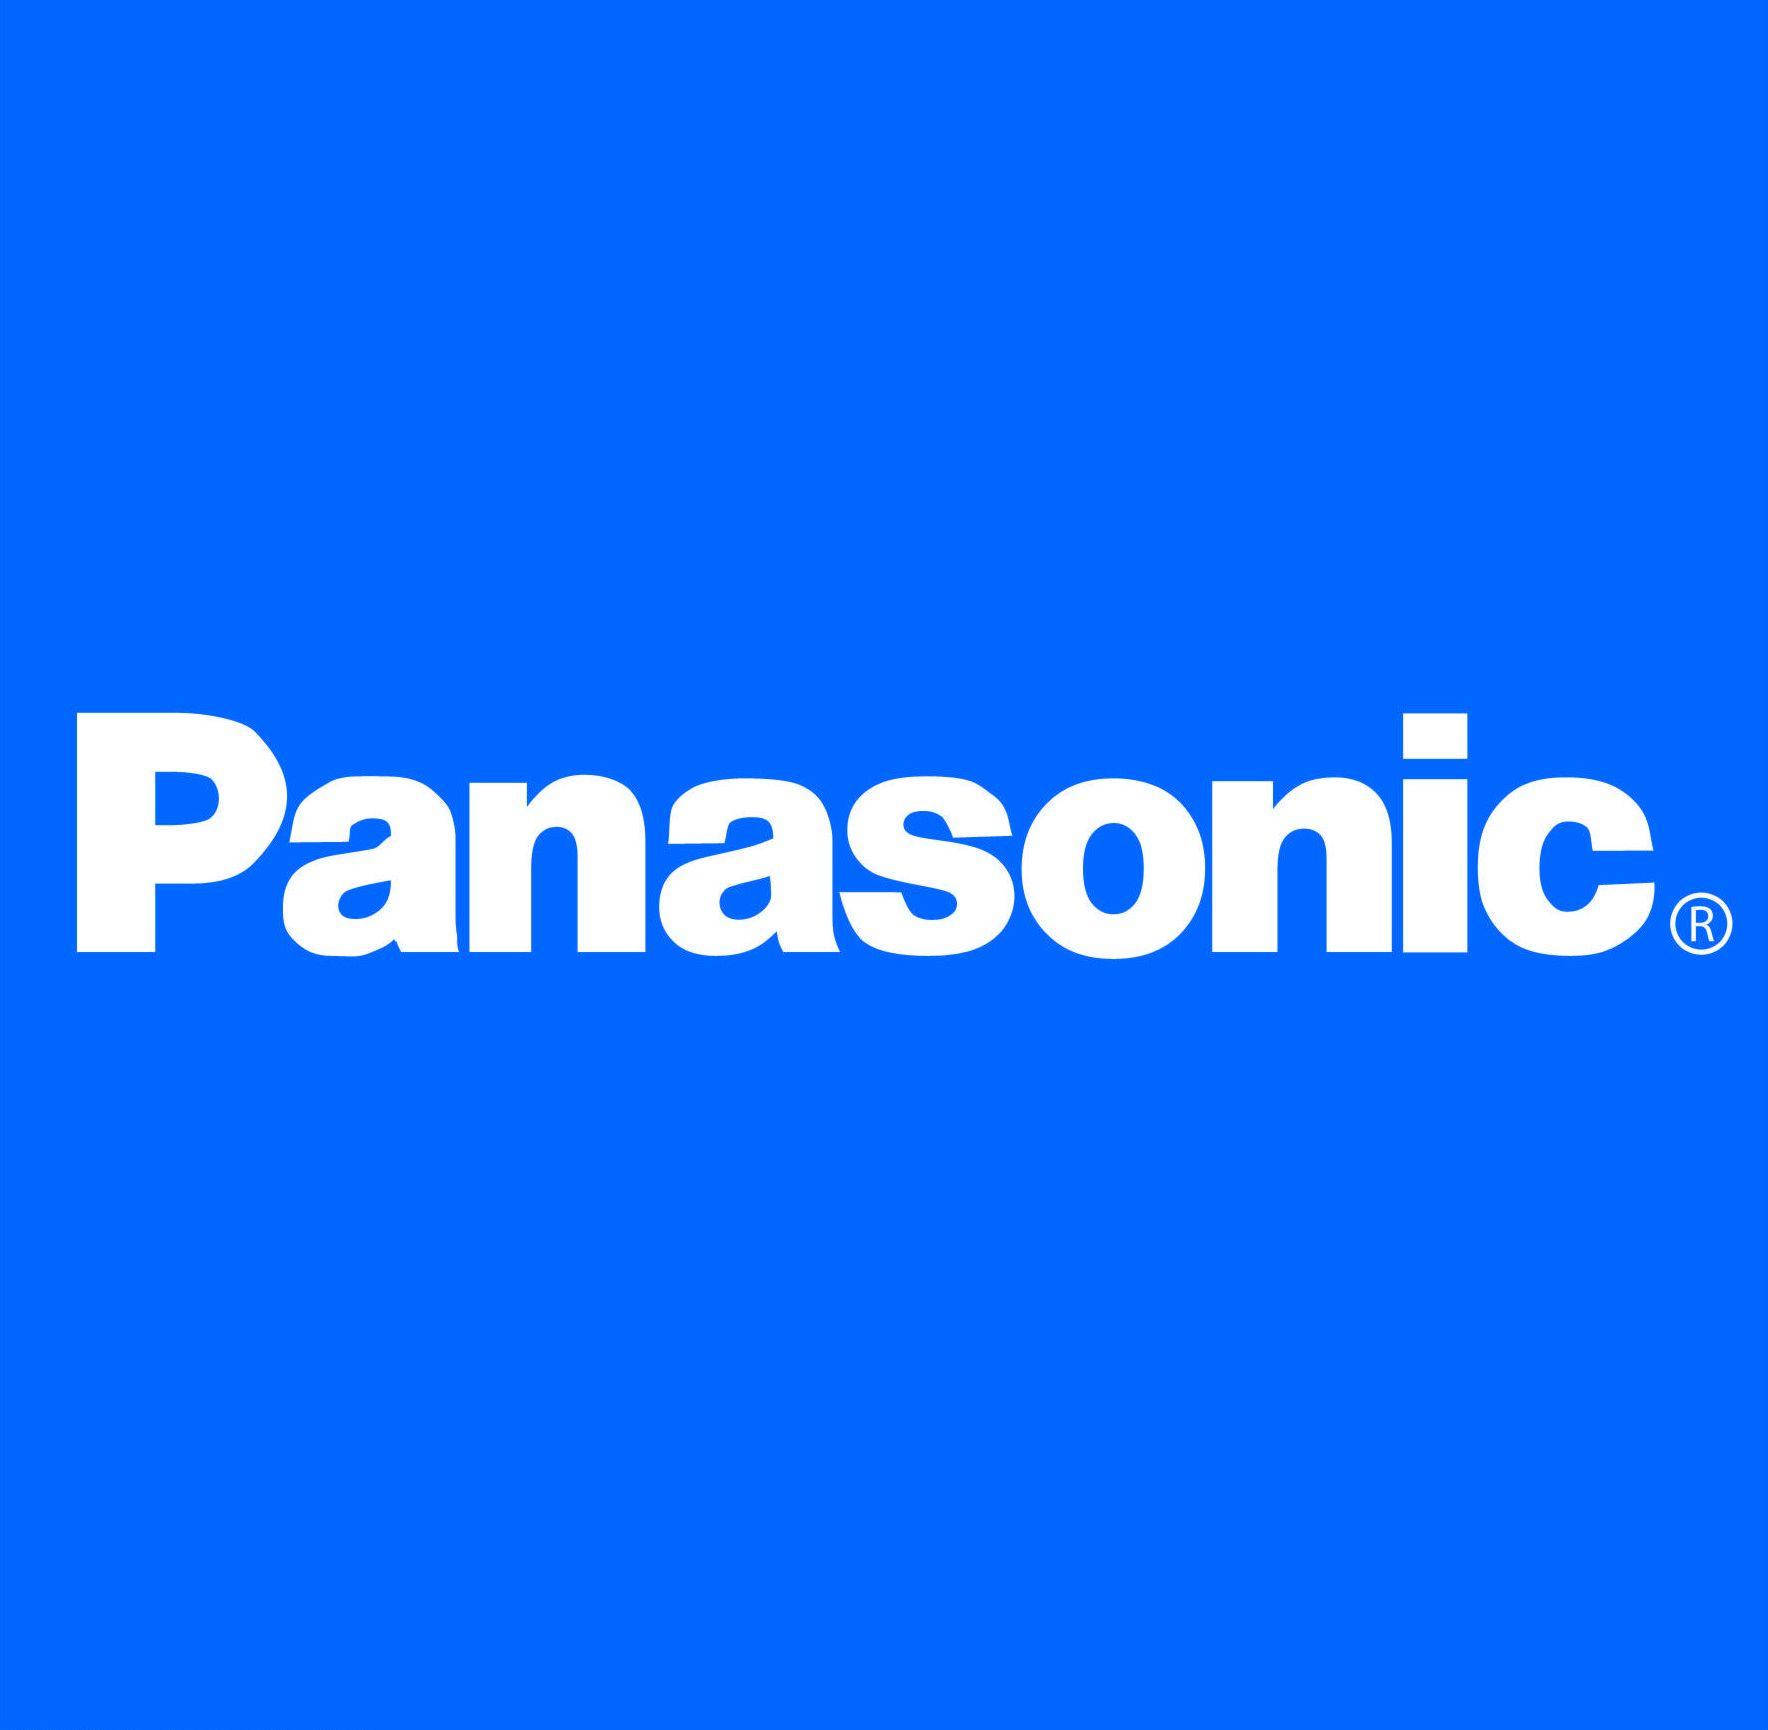 Panasonic Blue Background Background